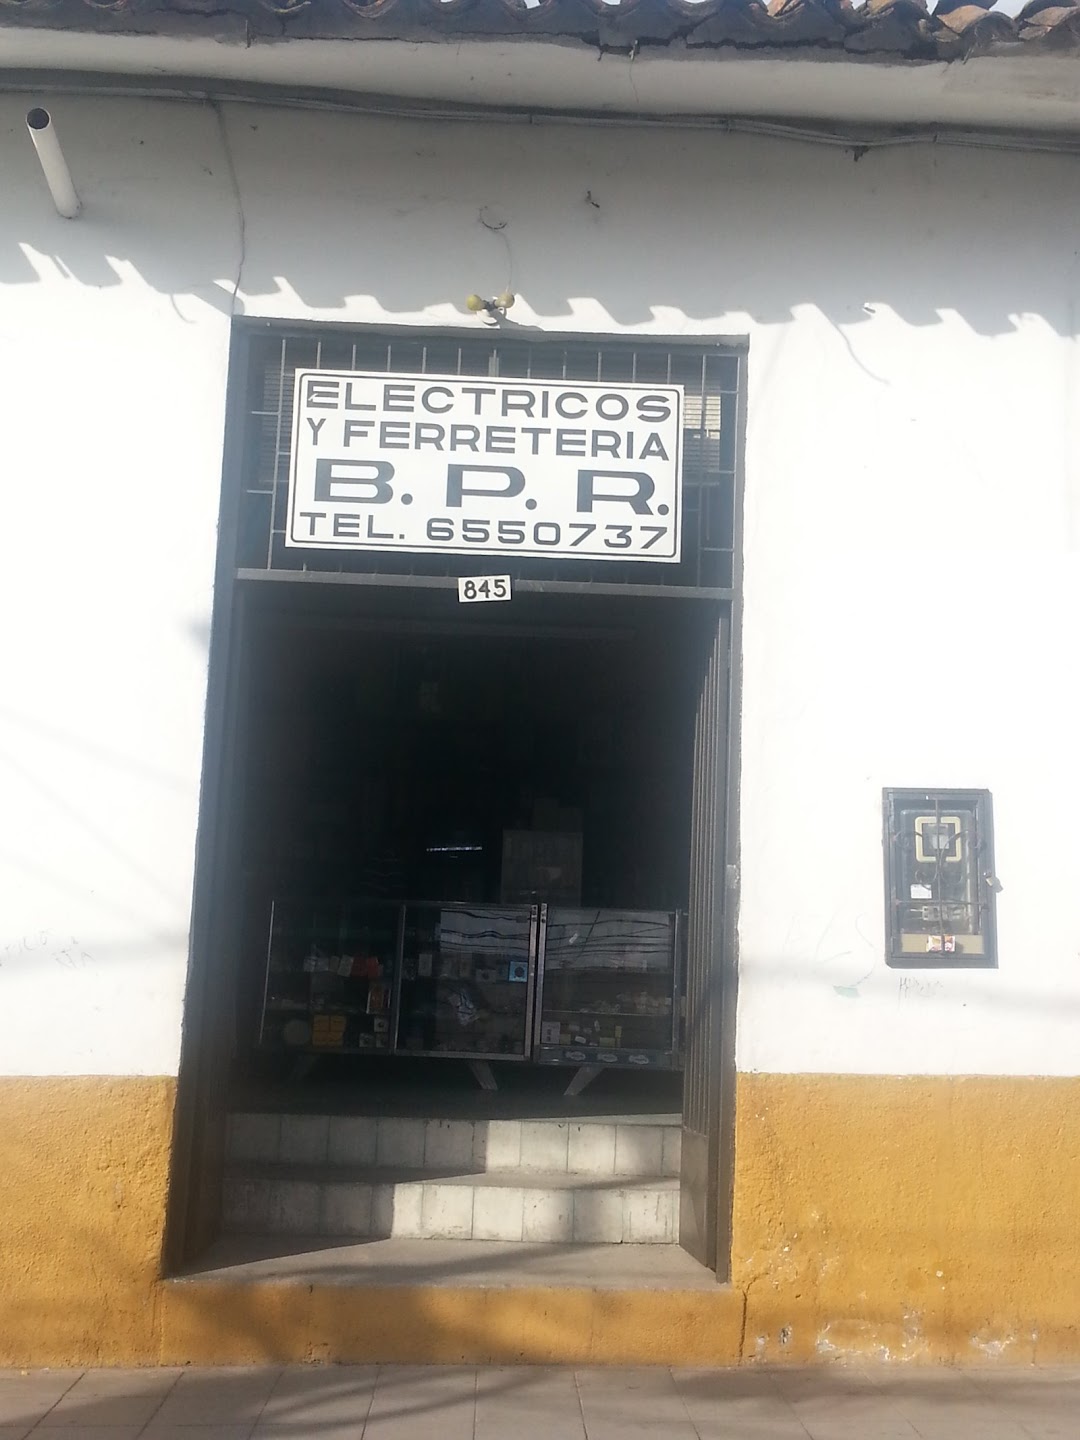 Electricos y Ferreteria B.P.R.